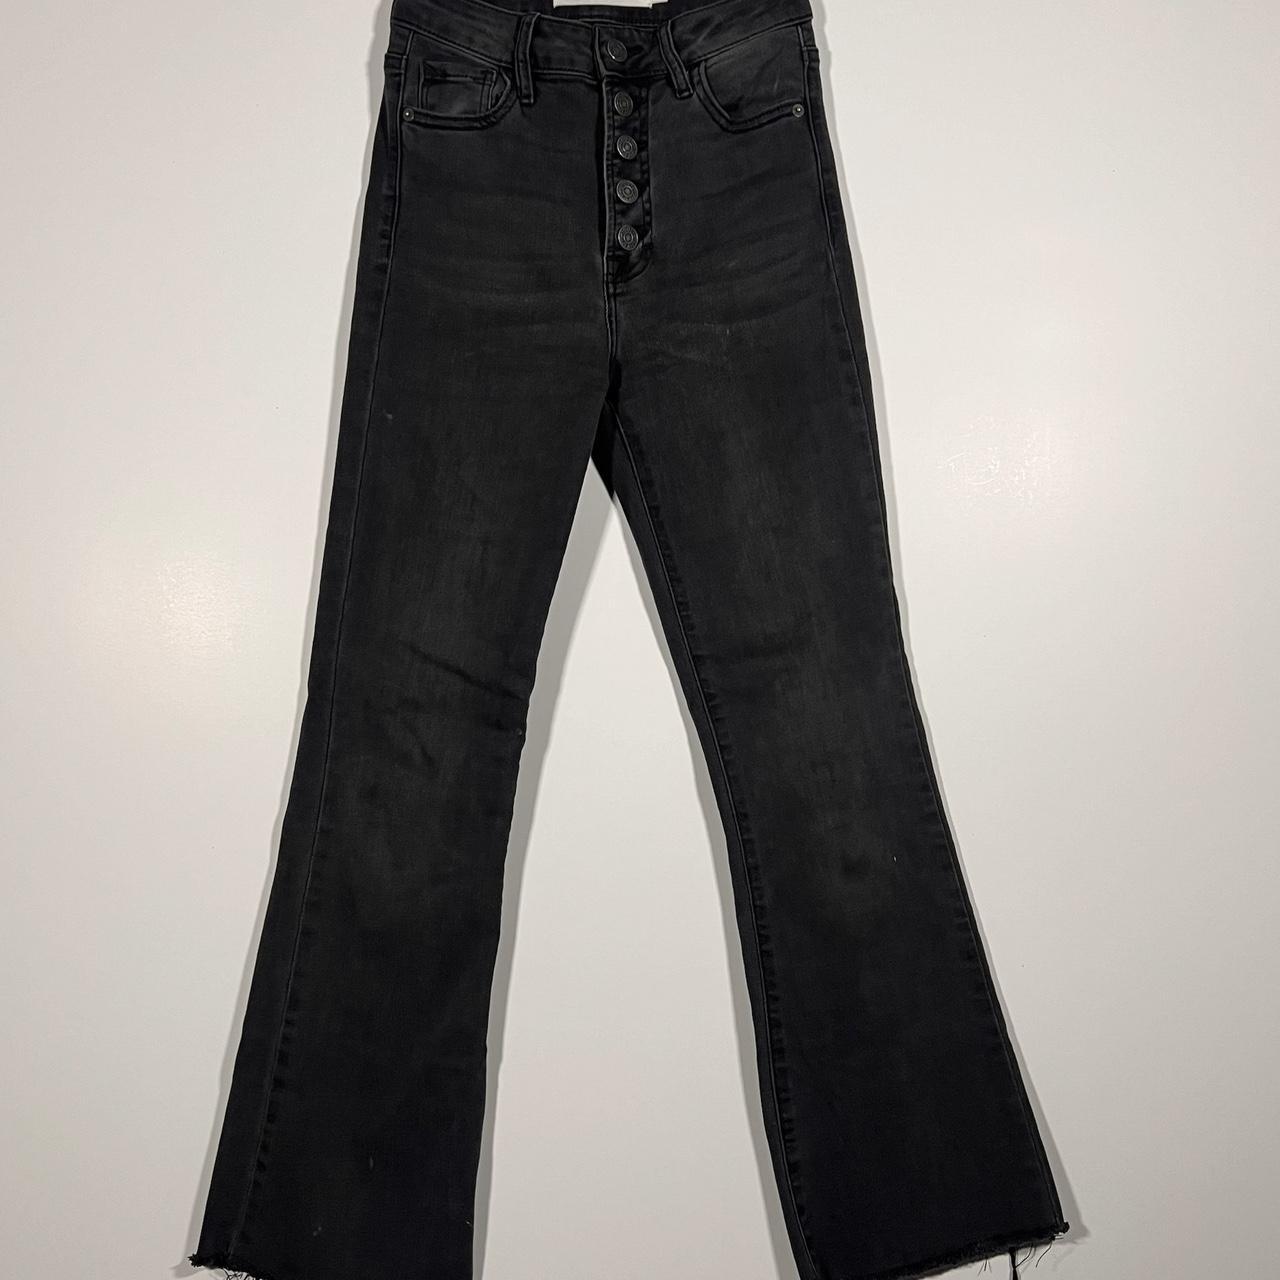 Hidden Jeans Women’s 24 Black Raw Hem Button Fly... - Depop